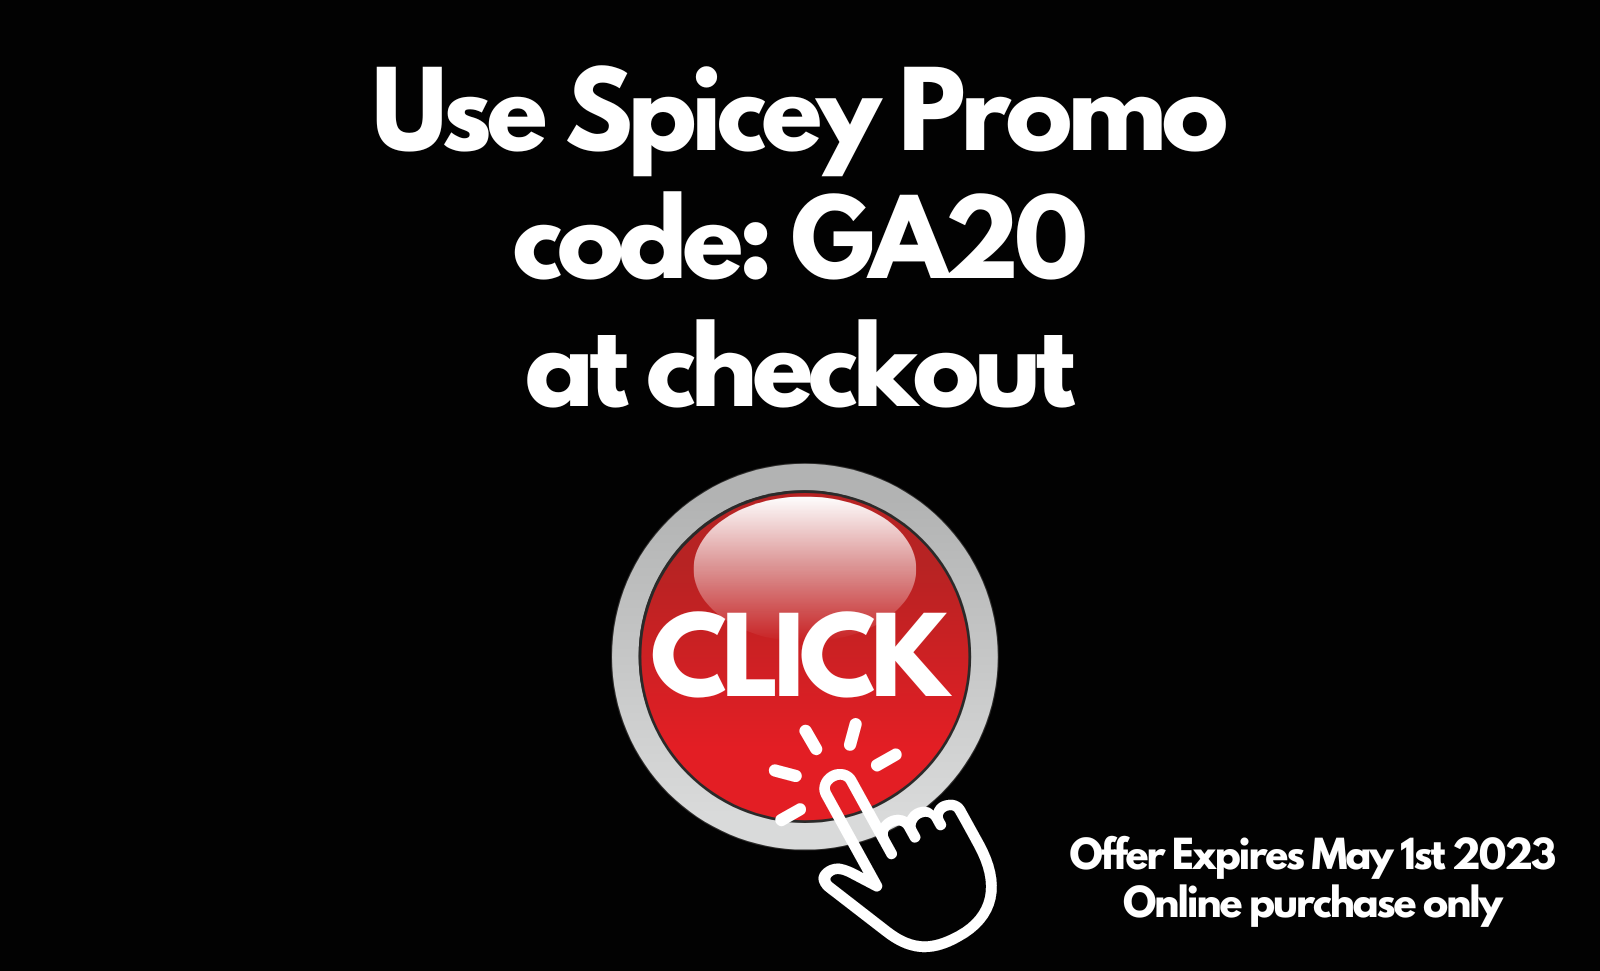 Use Spicey Promo code: GA20 at checkout